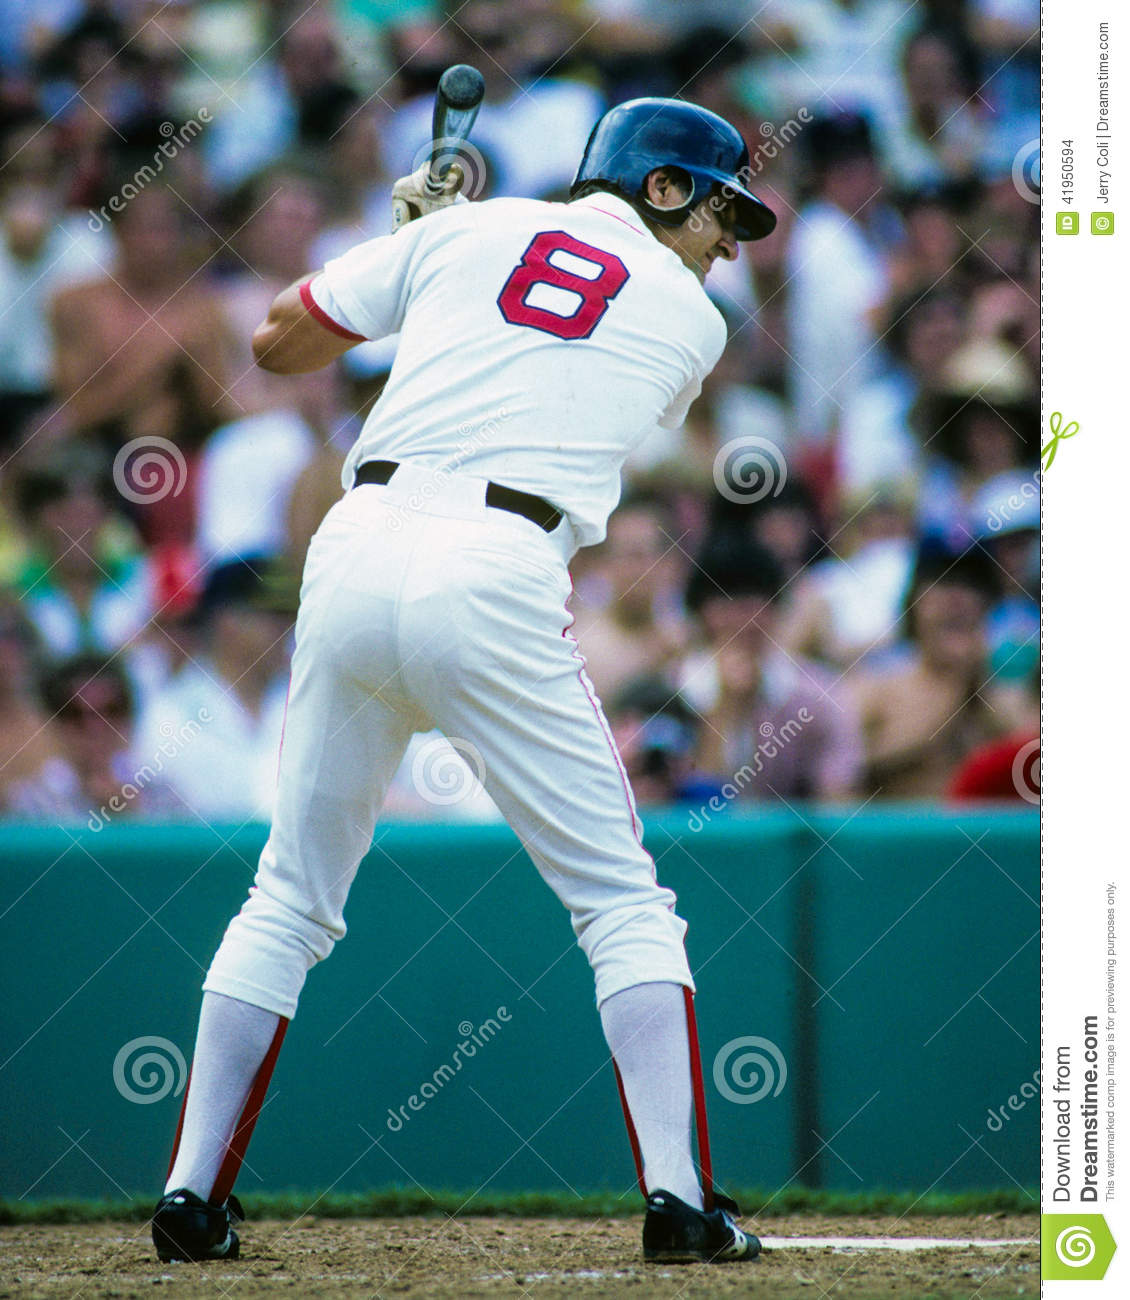 carl-yastrzemski-boston-red-sox-former-outfielder-image-color-slide-41950594